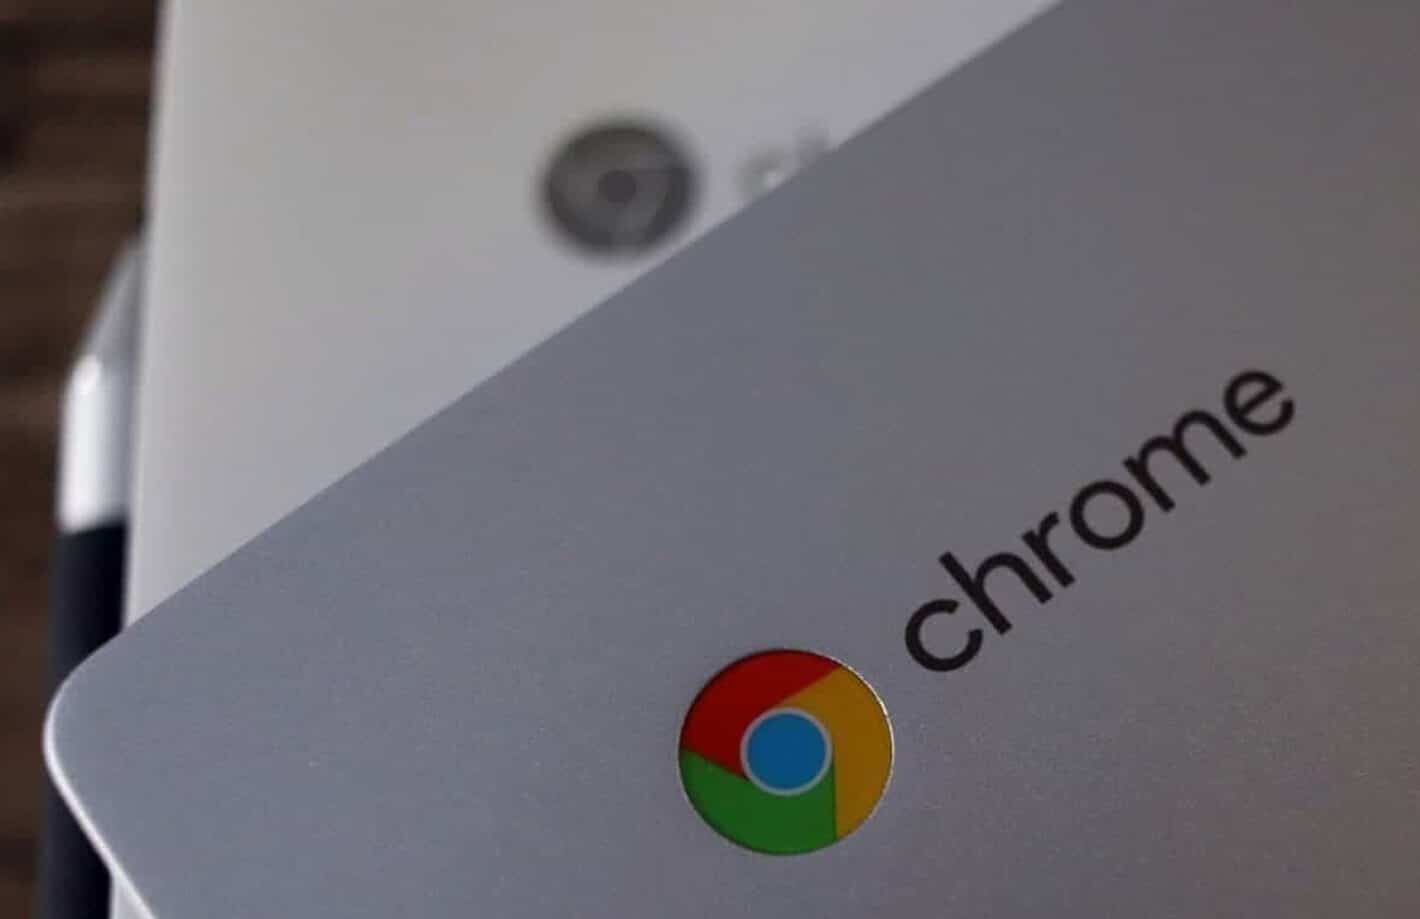 Google Chromebook Hadirkan Privasi Baru di Kamera dan Mic